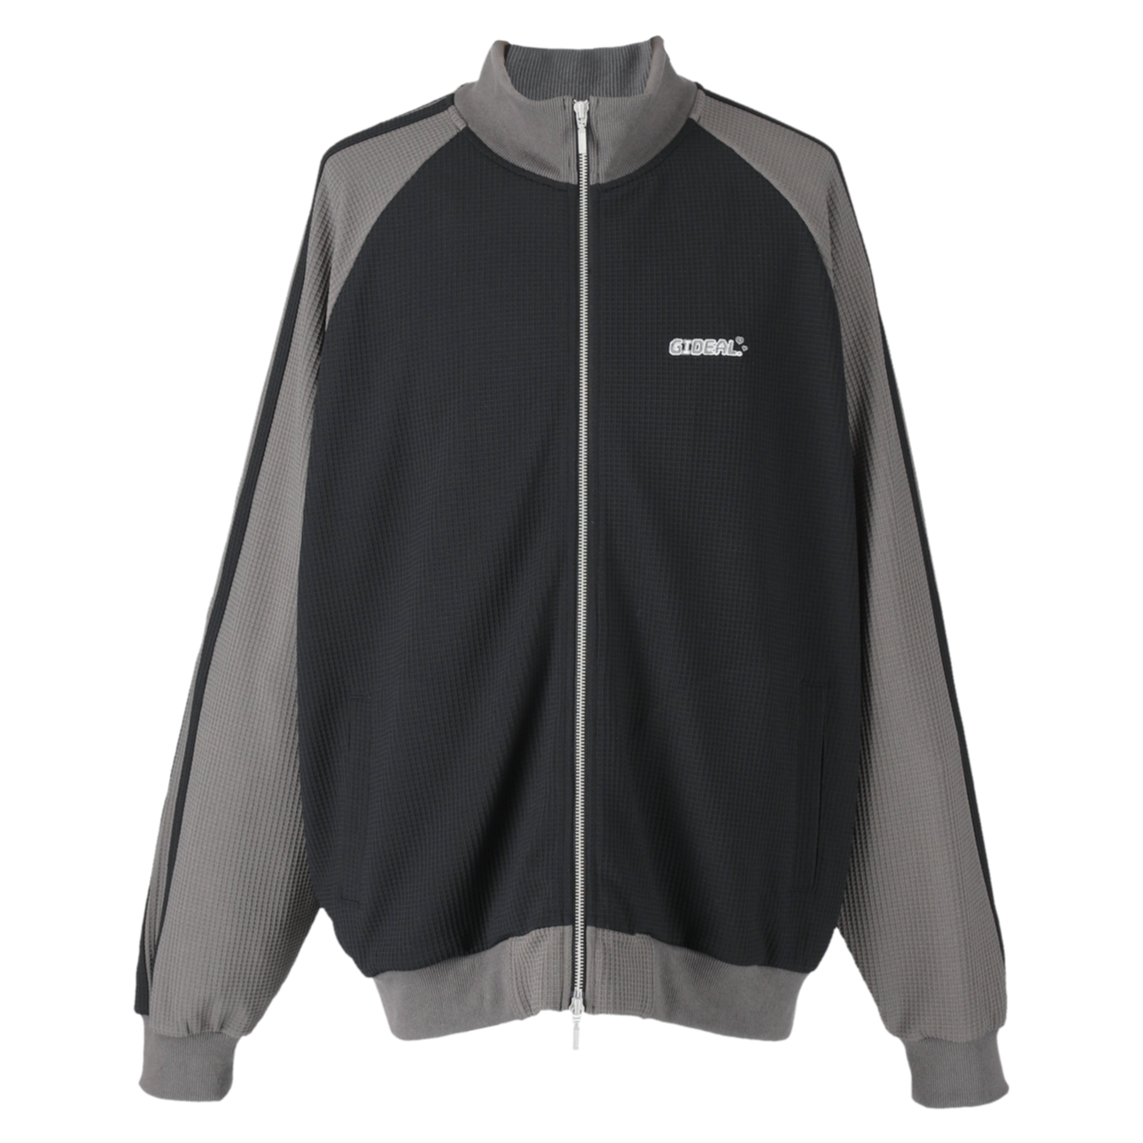 waffle track jacket【black＆gray】 | GIDEAL.